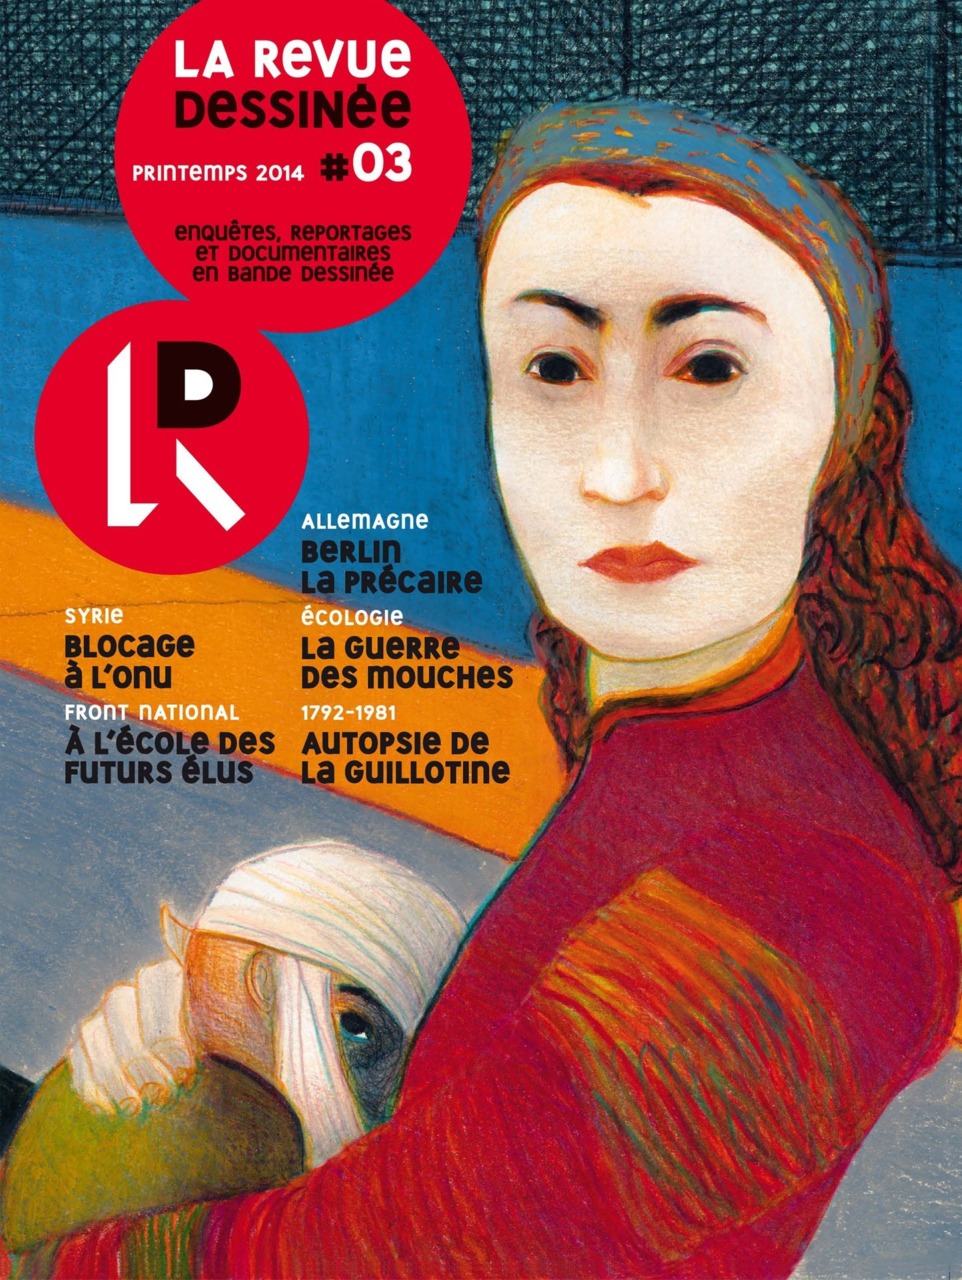 La Revue Dessinée #3 (Issue) - User Reviews